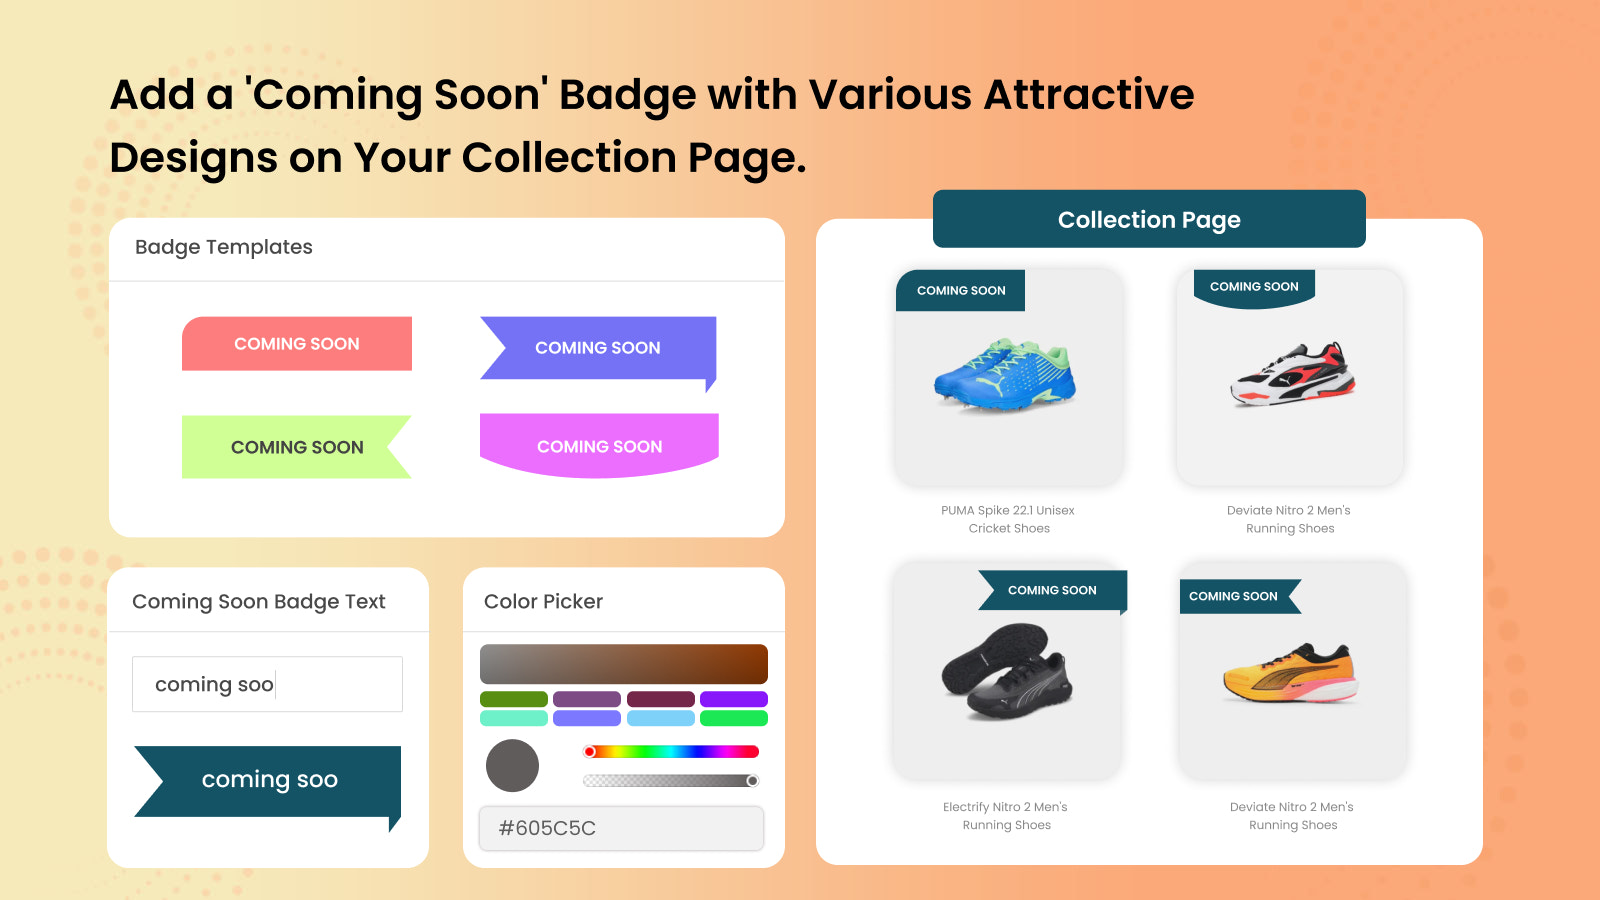 Ajouter un badge 'Coming Soon' avec divers designs sur la page de collection